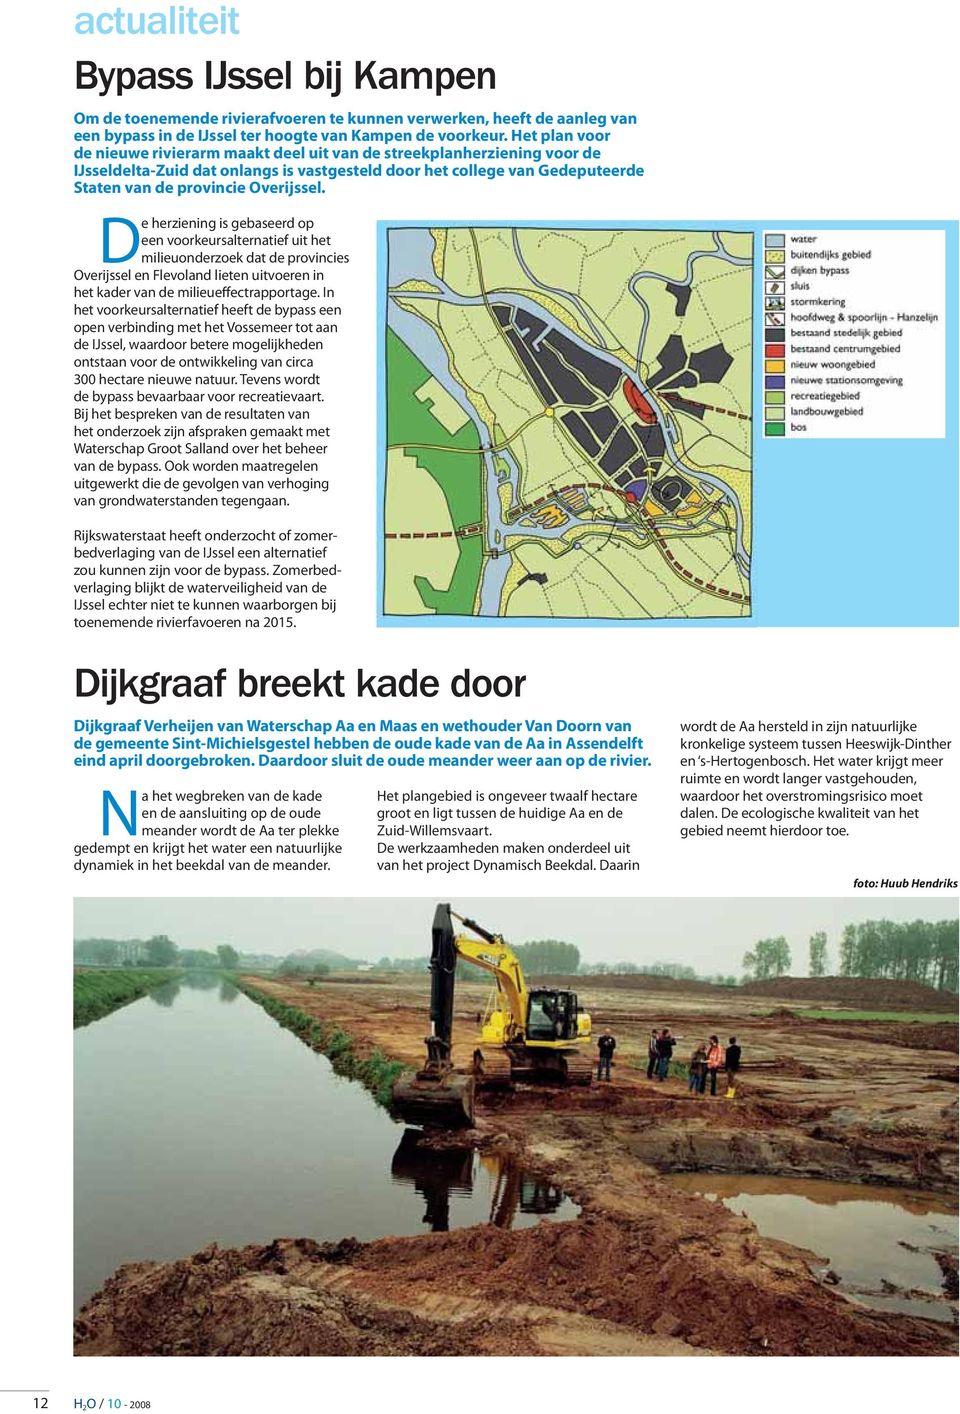 De herziening is gebaseerd op een voorkeursalternatief uit het milieuonderzoek dat de provincies Overijssel en Flevoland lieten uitvoeren in het kader van de milieueffectrapportage.